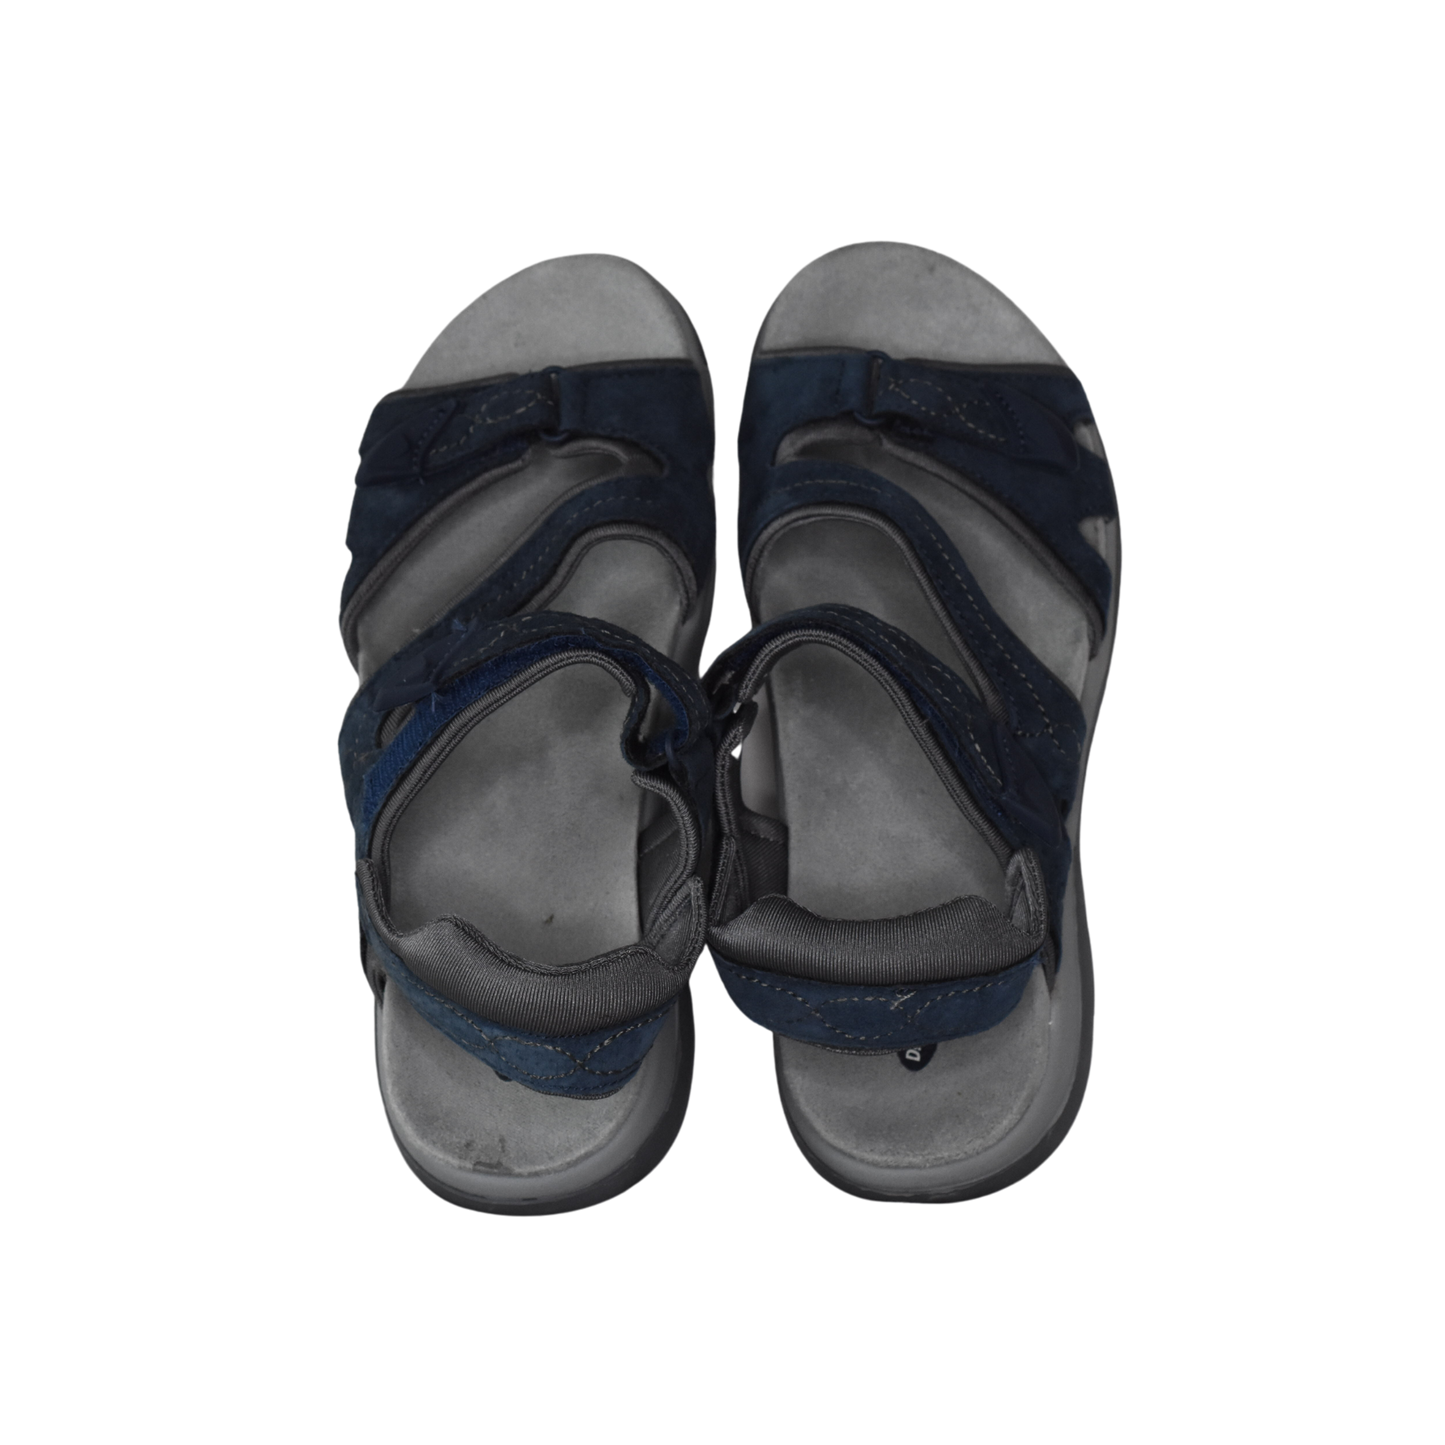 Dr. Scholl's Sandal Blue Size 7 SKU 000329-4